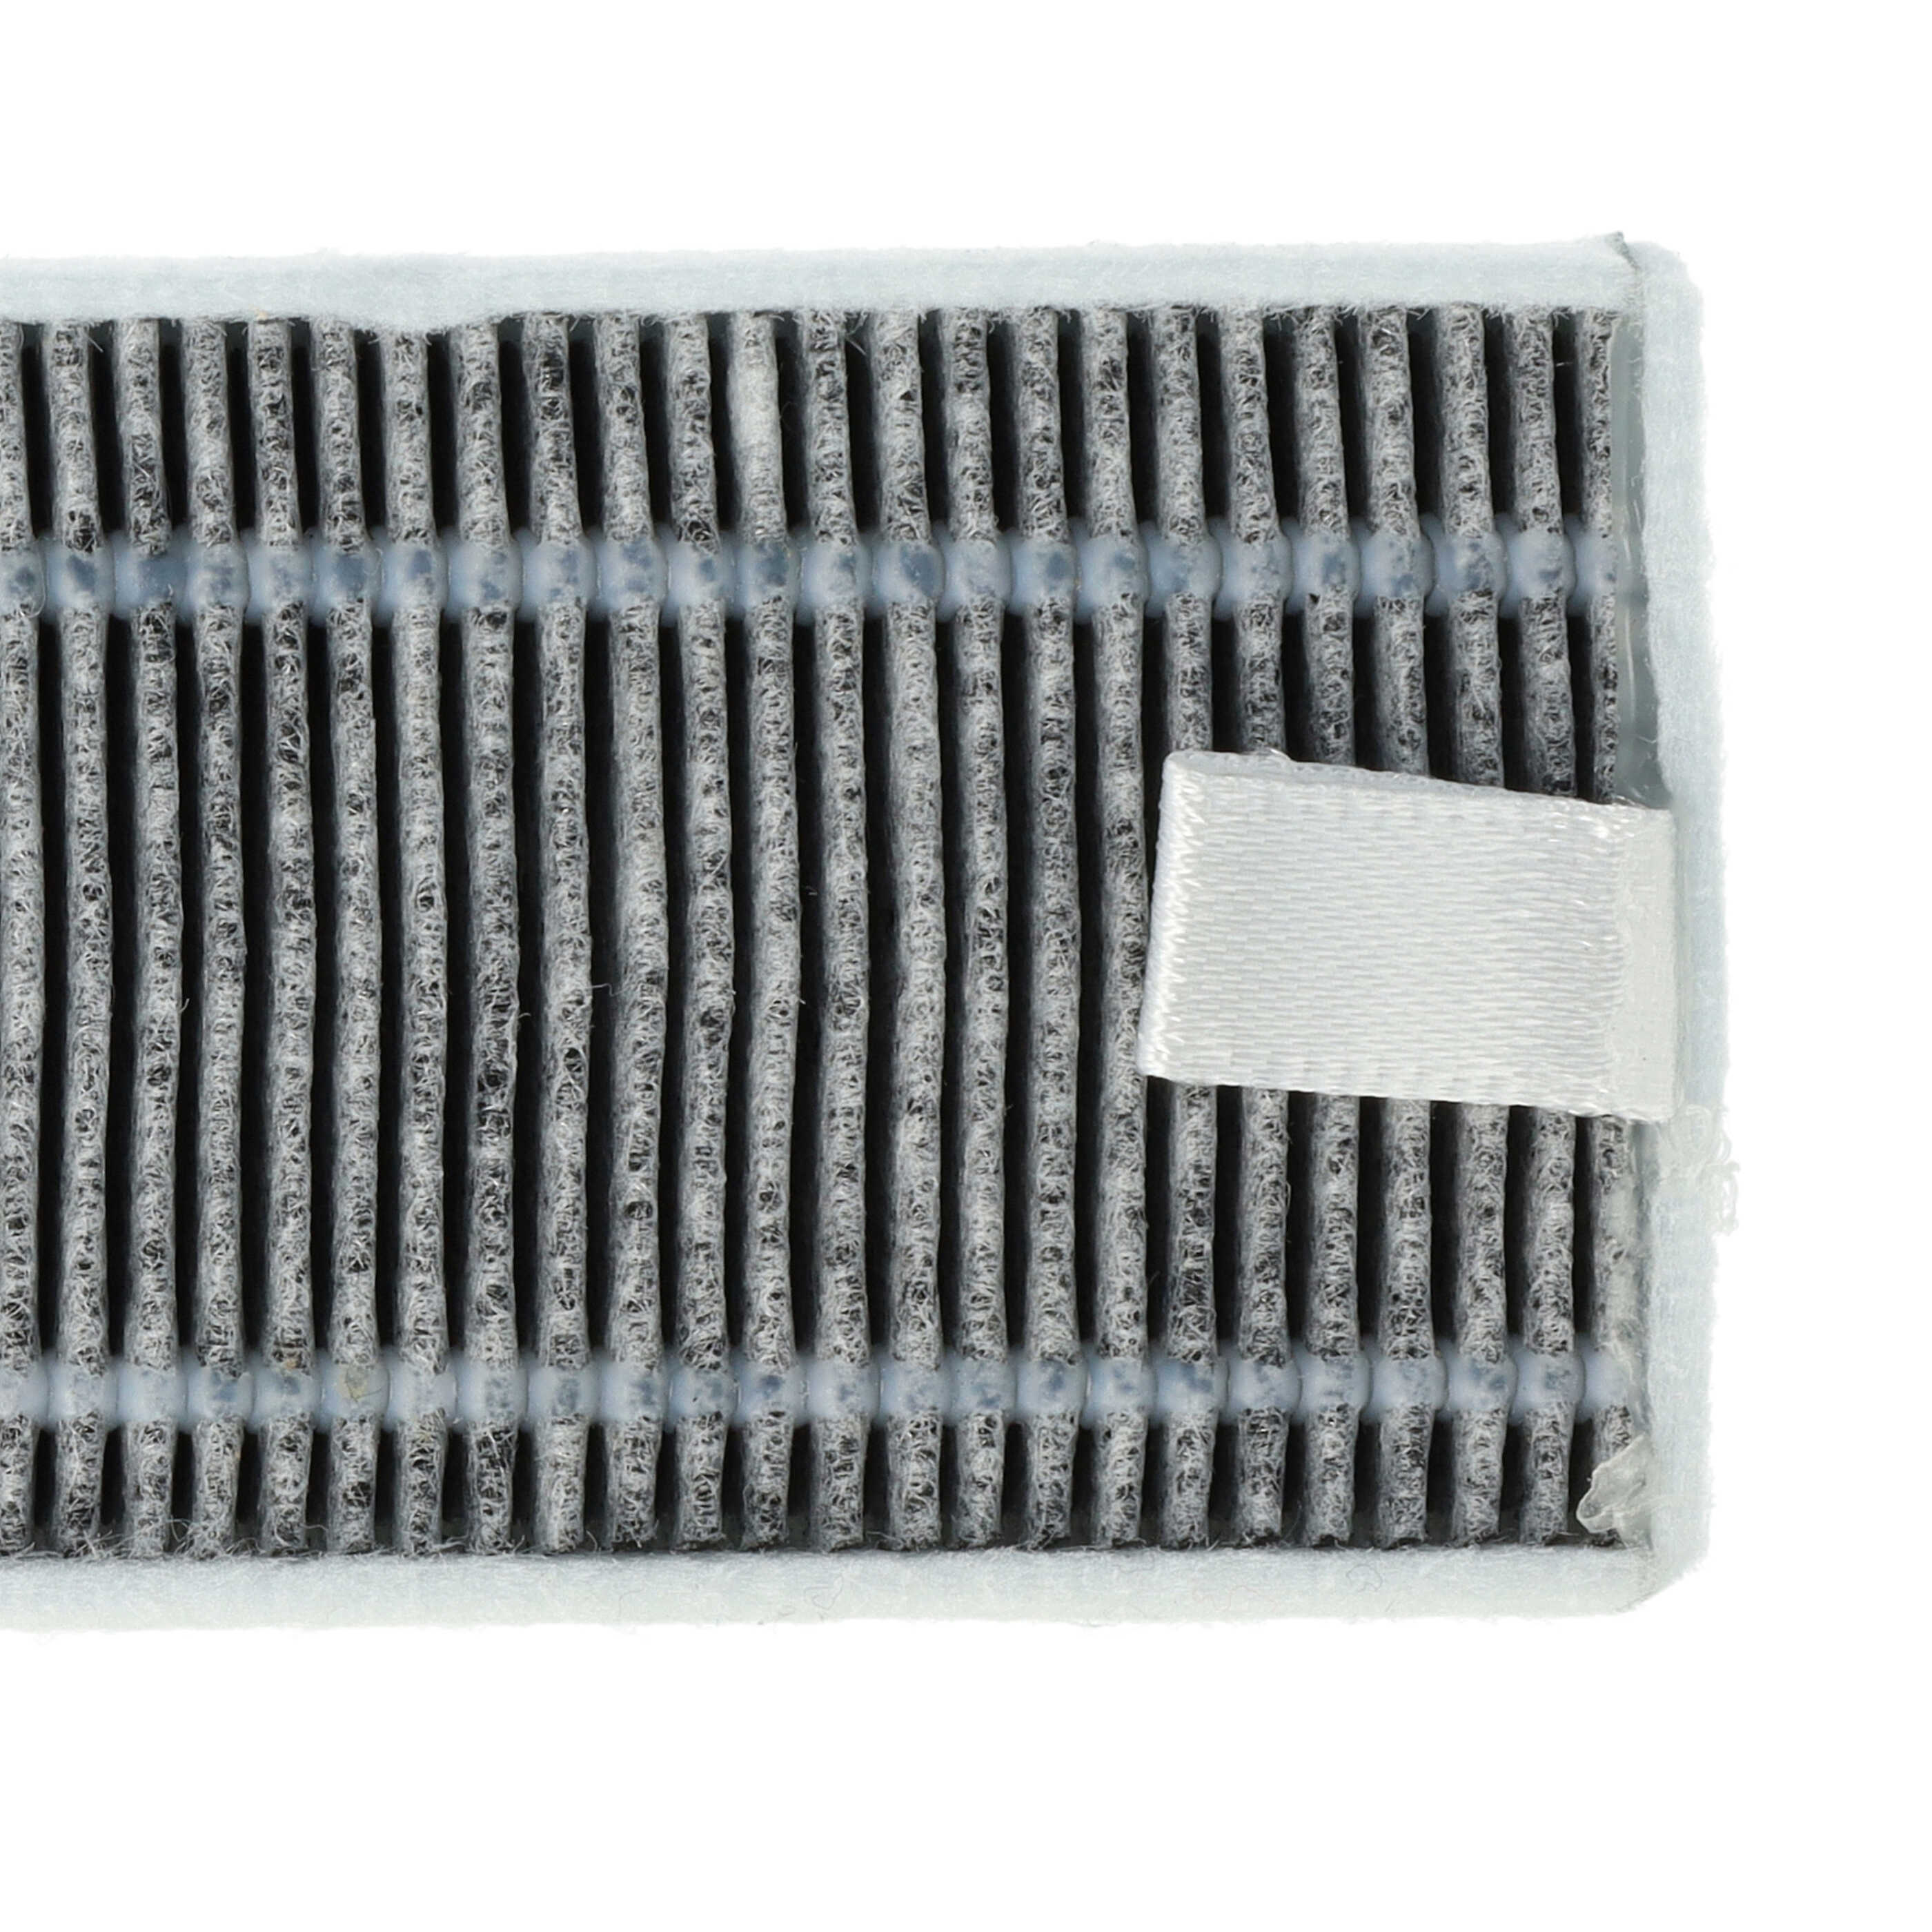 2x Filtres à charbon actif pour robot aspirateur Proscenic, Cecotec, Xiaomi M7 u.a. - 13 x 4 x 1 cm